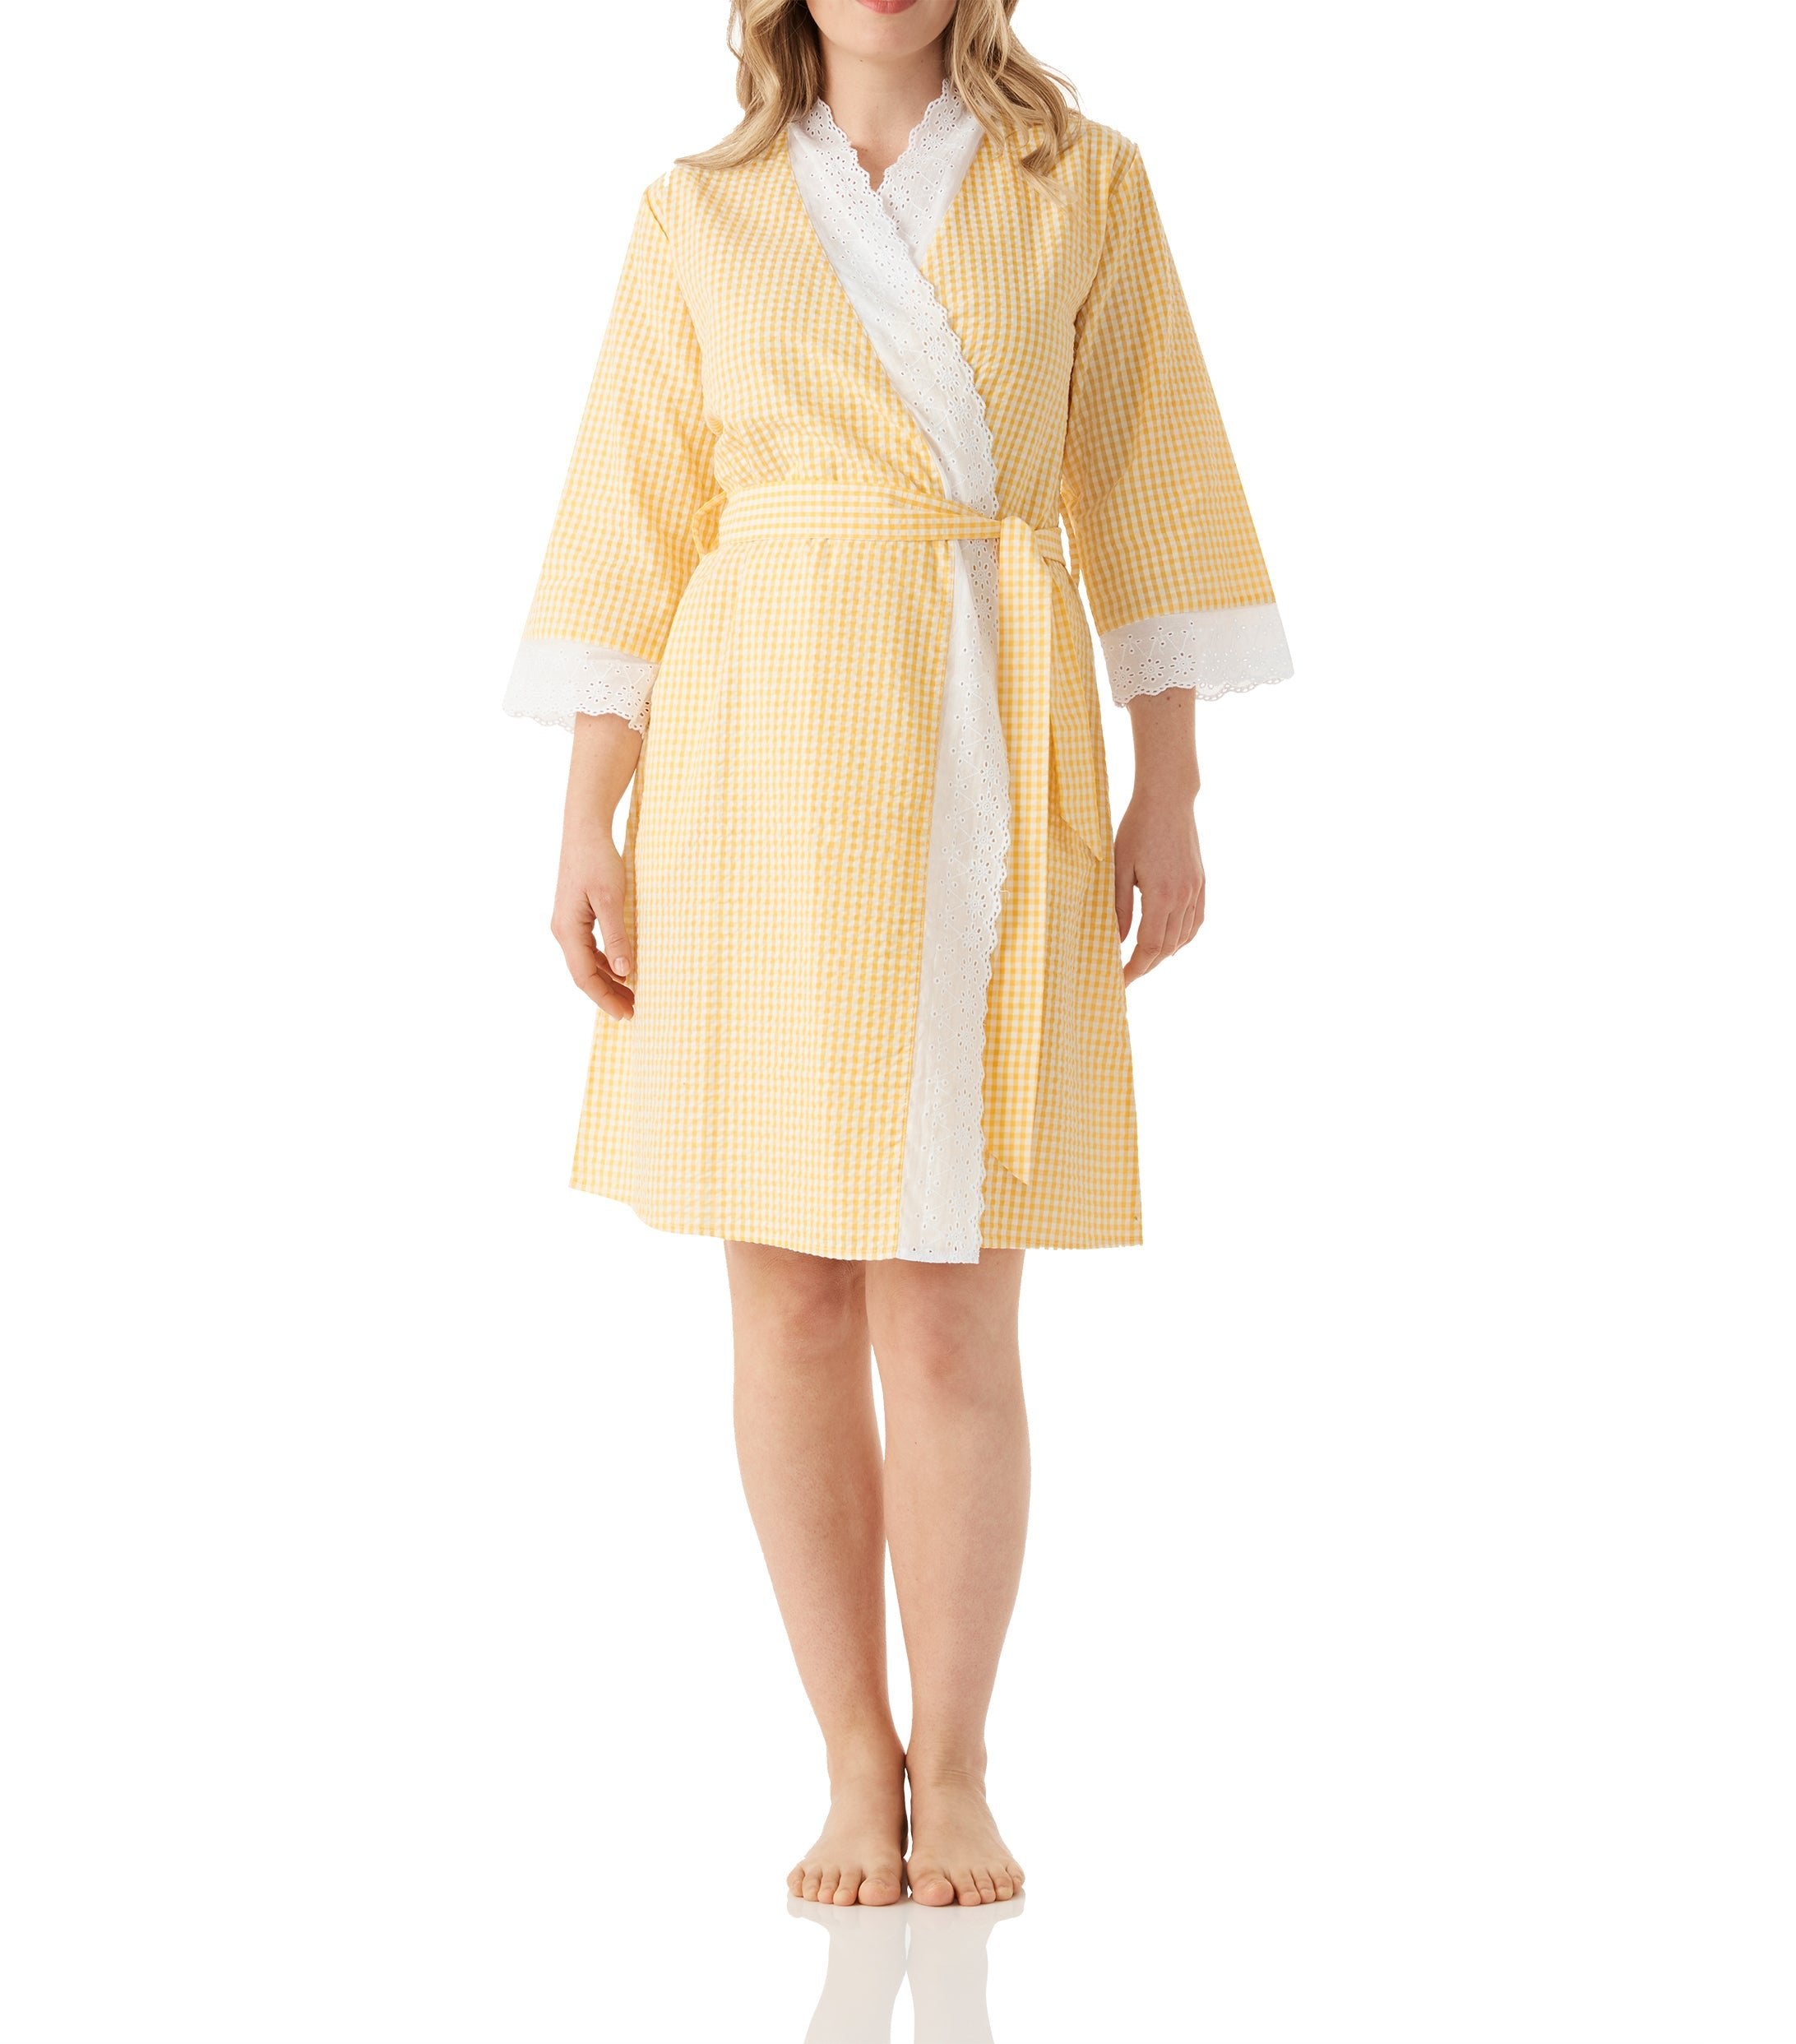 Kimono Robe | Kimono Dressing Gown | Robes | Beautiful Robes